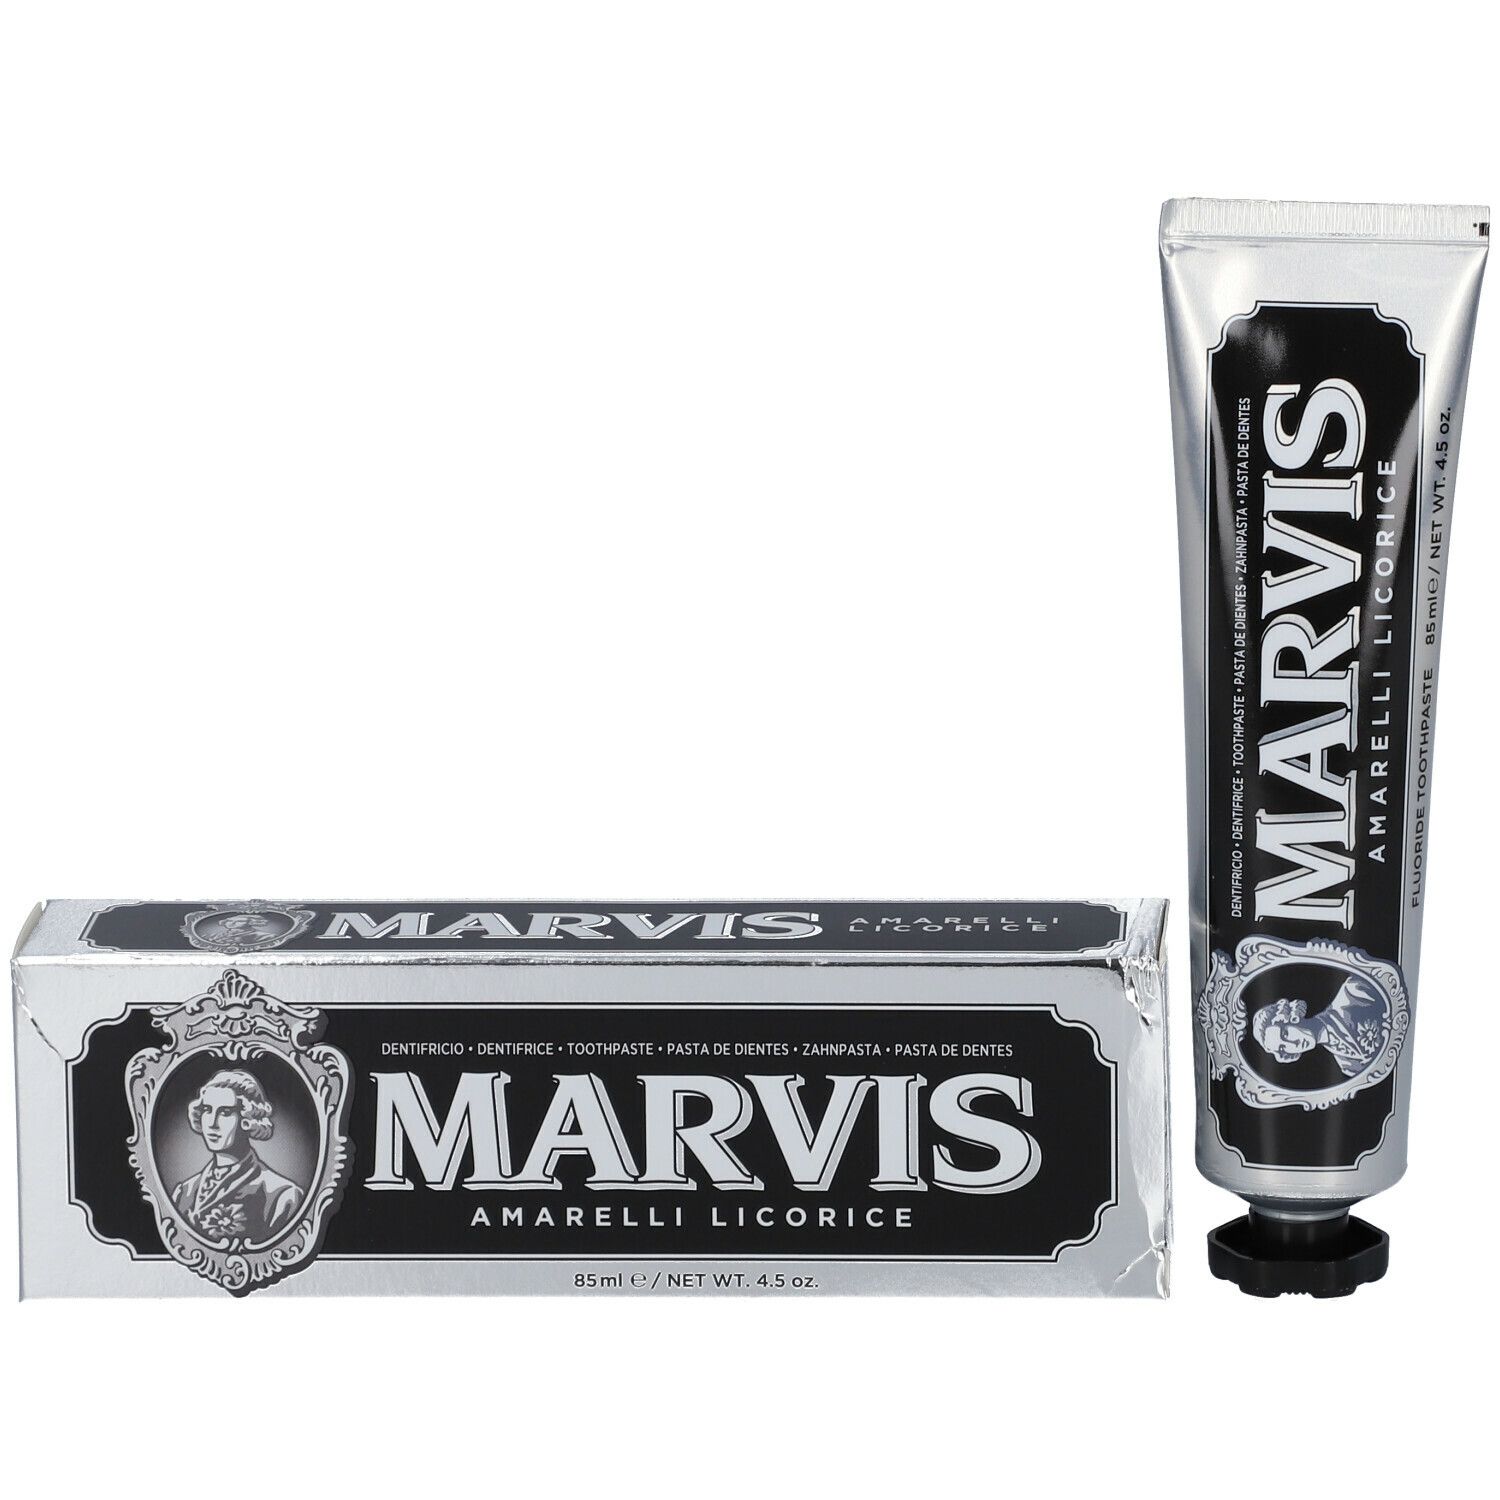 MARVIS Amarelli Licorice Mint Zahnpasta